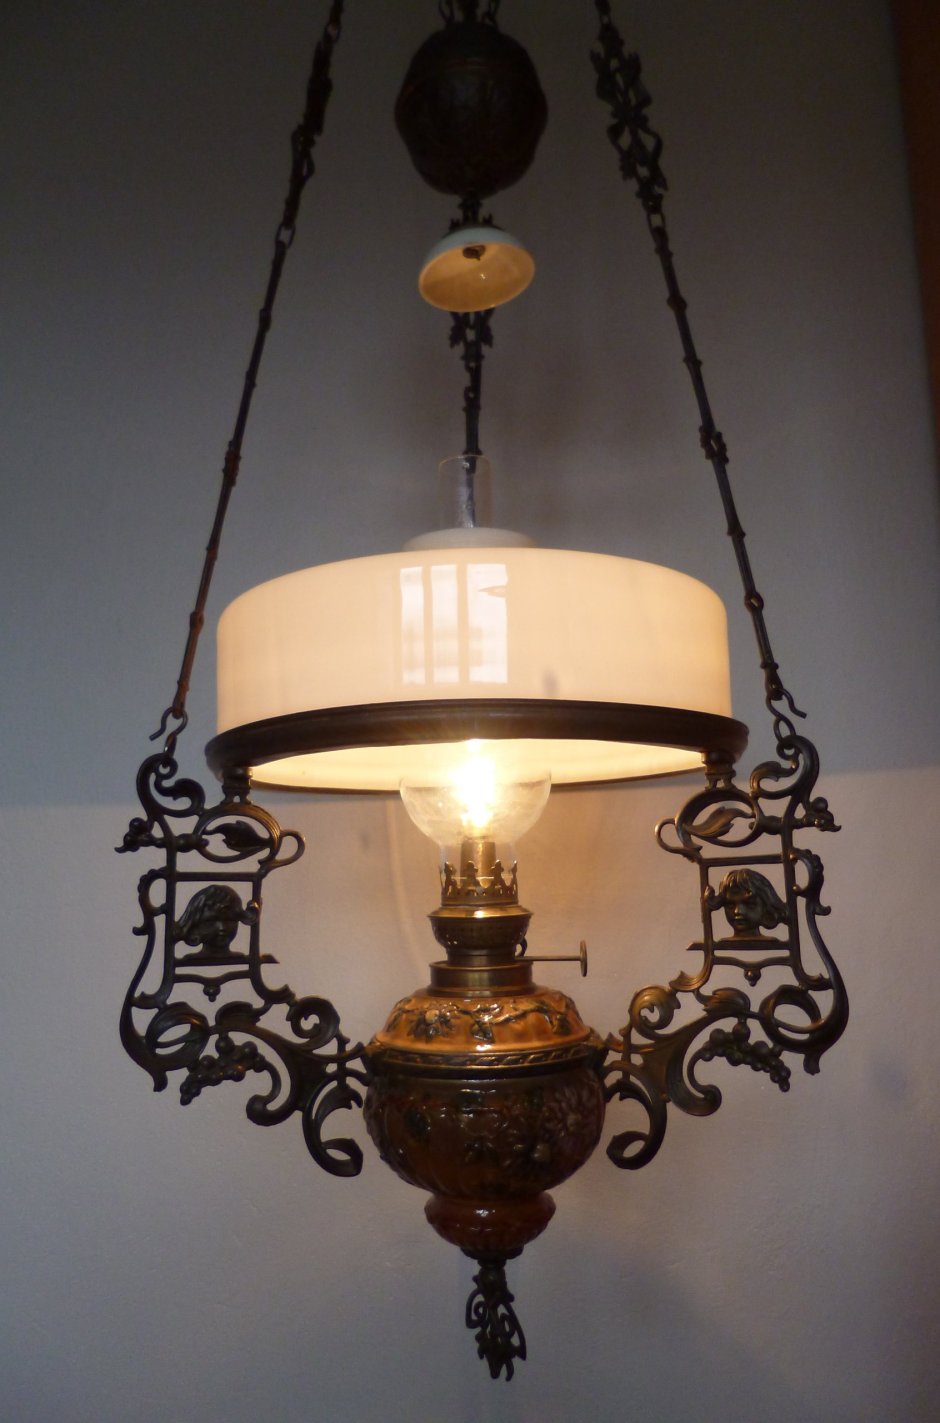 Подвесная керосиновая лампа 19 века